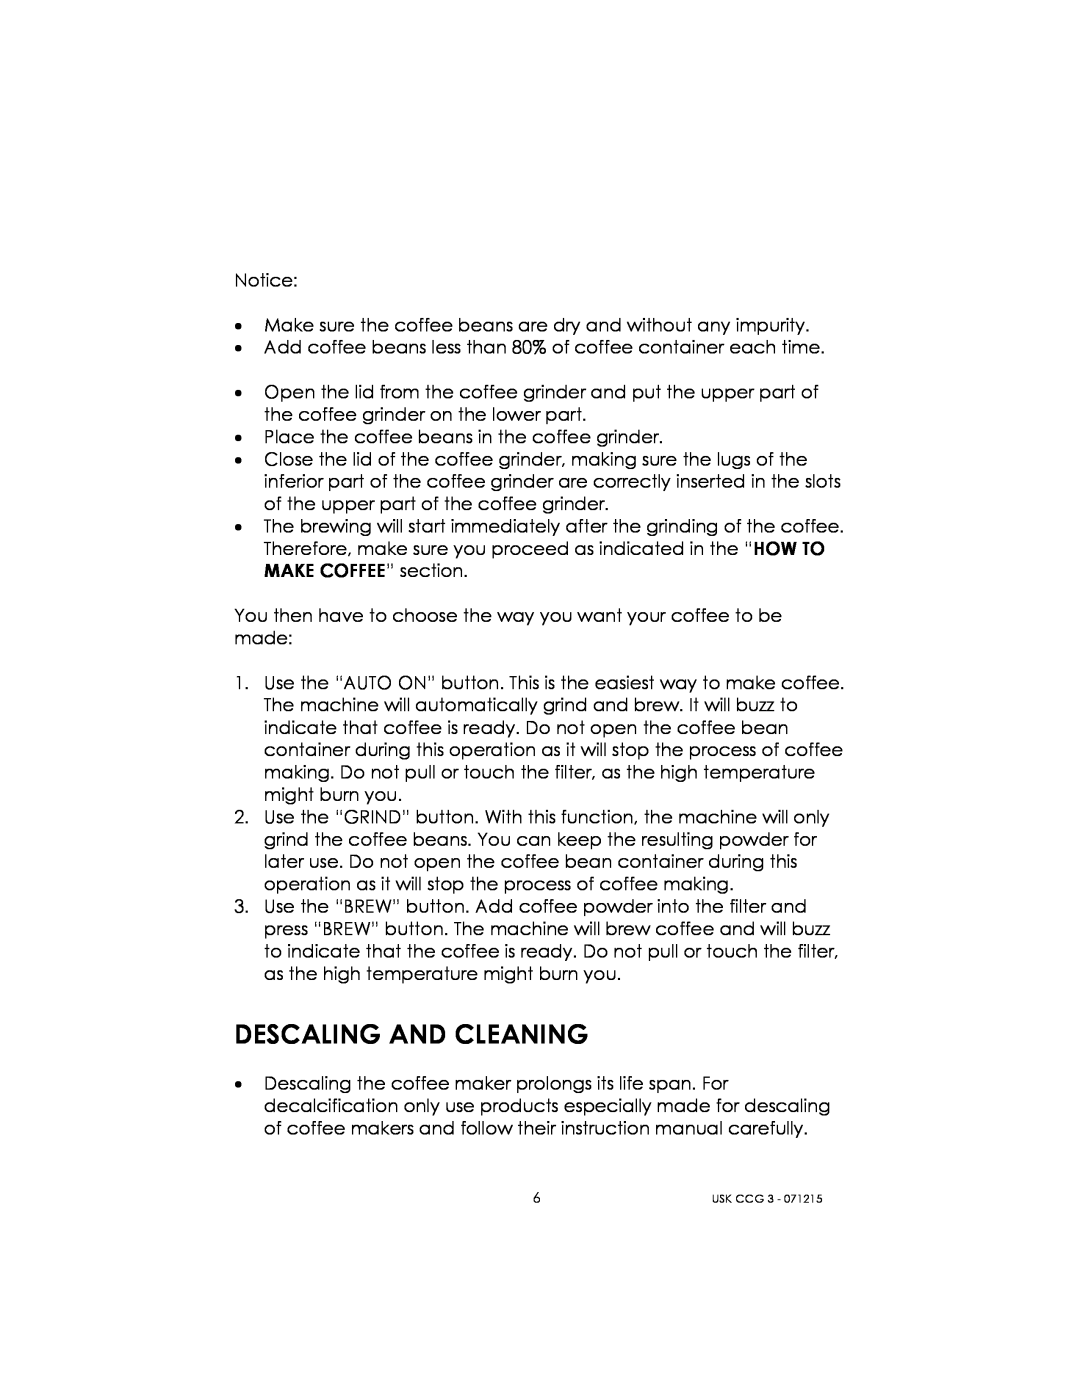 Kalorik USK CCG 3 manual Descaling And Cleaning 